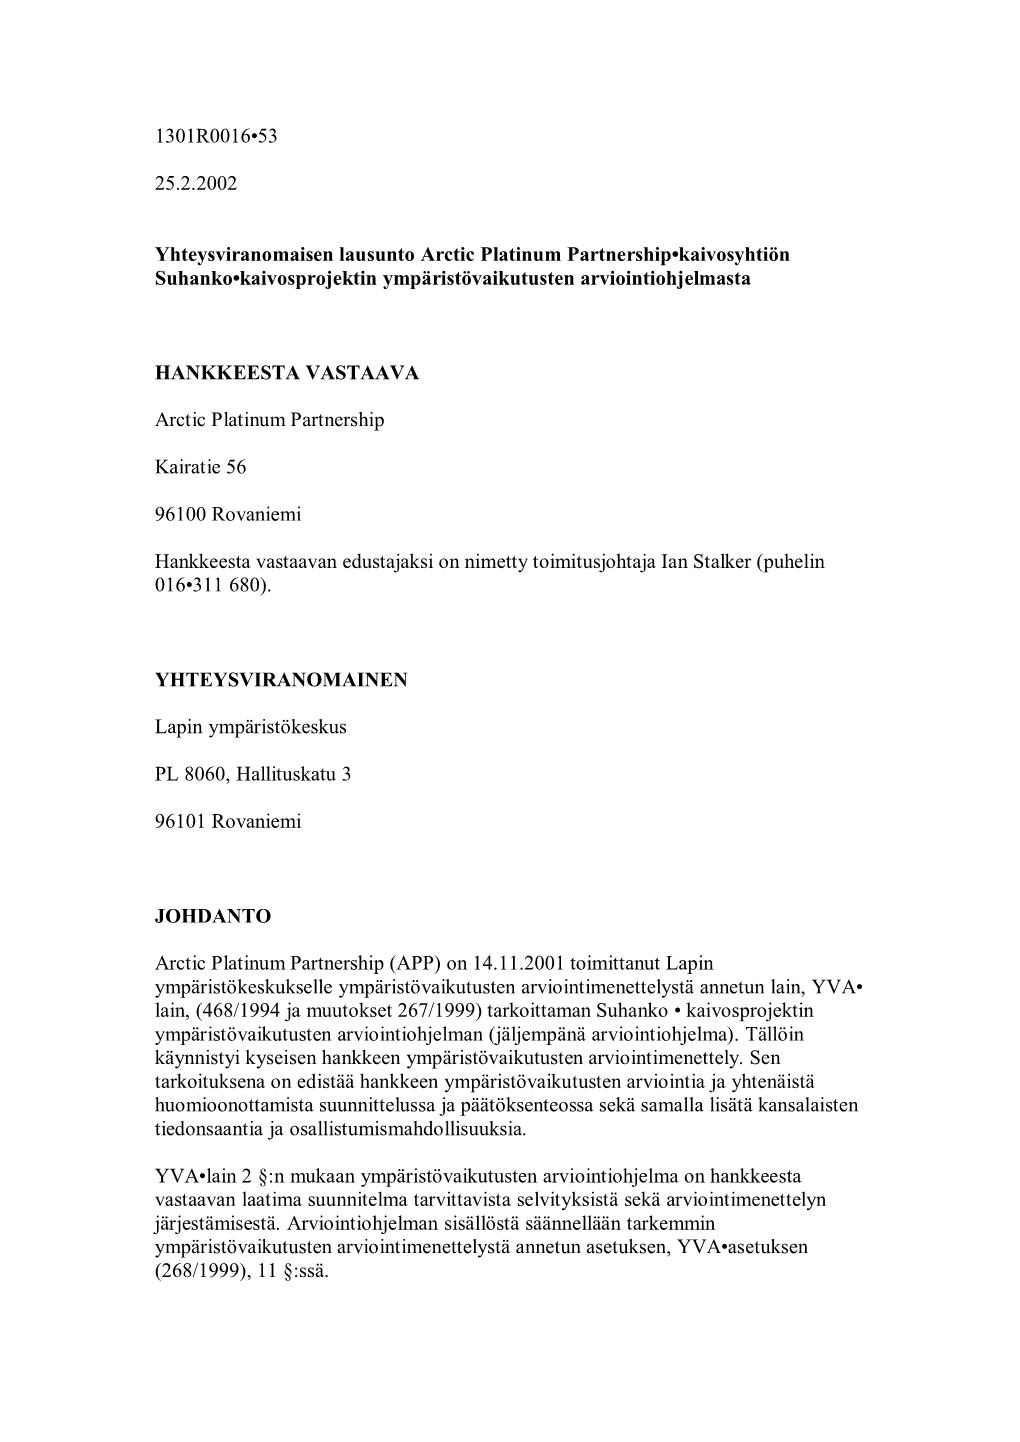 1301R0016-53 25.2.2002 Yhteysviranomaisen Lausunto Arctic Platinum Partnership-Kaivosyhtiön Suhanko-Kaivosprojektin Ympäristö